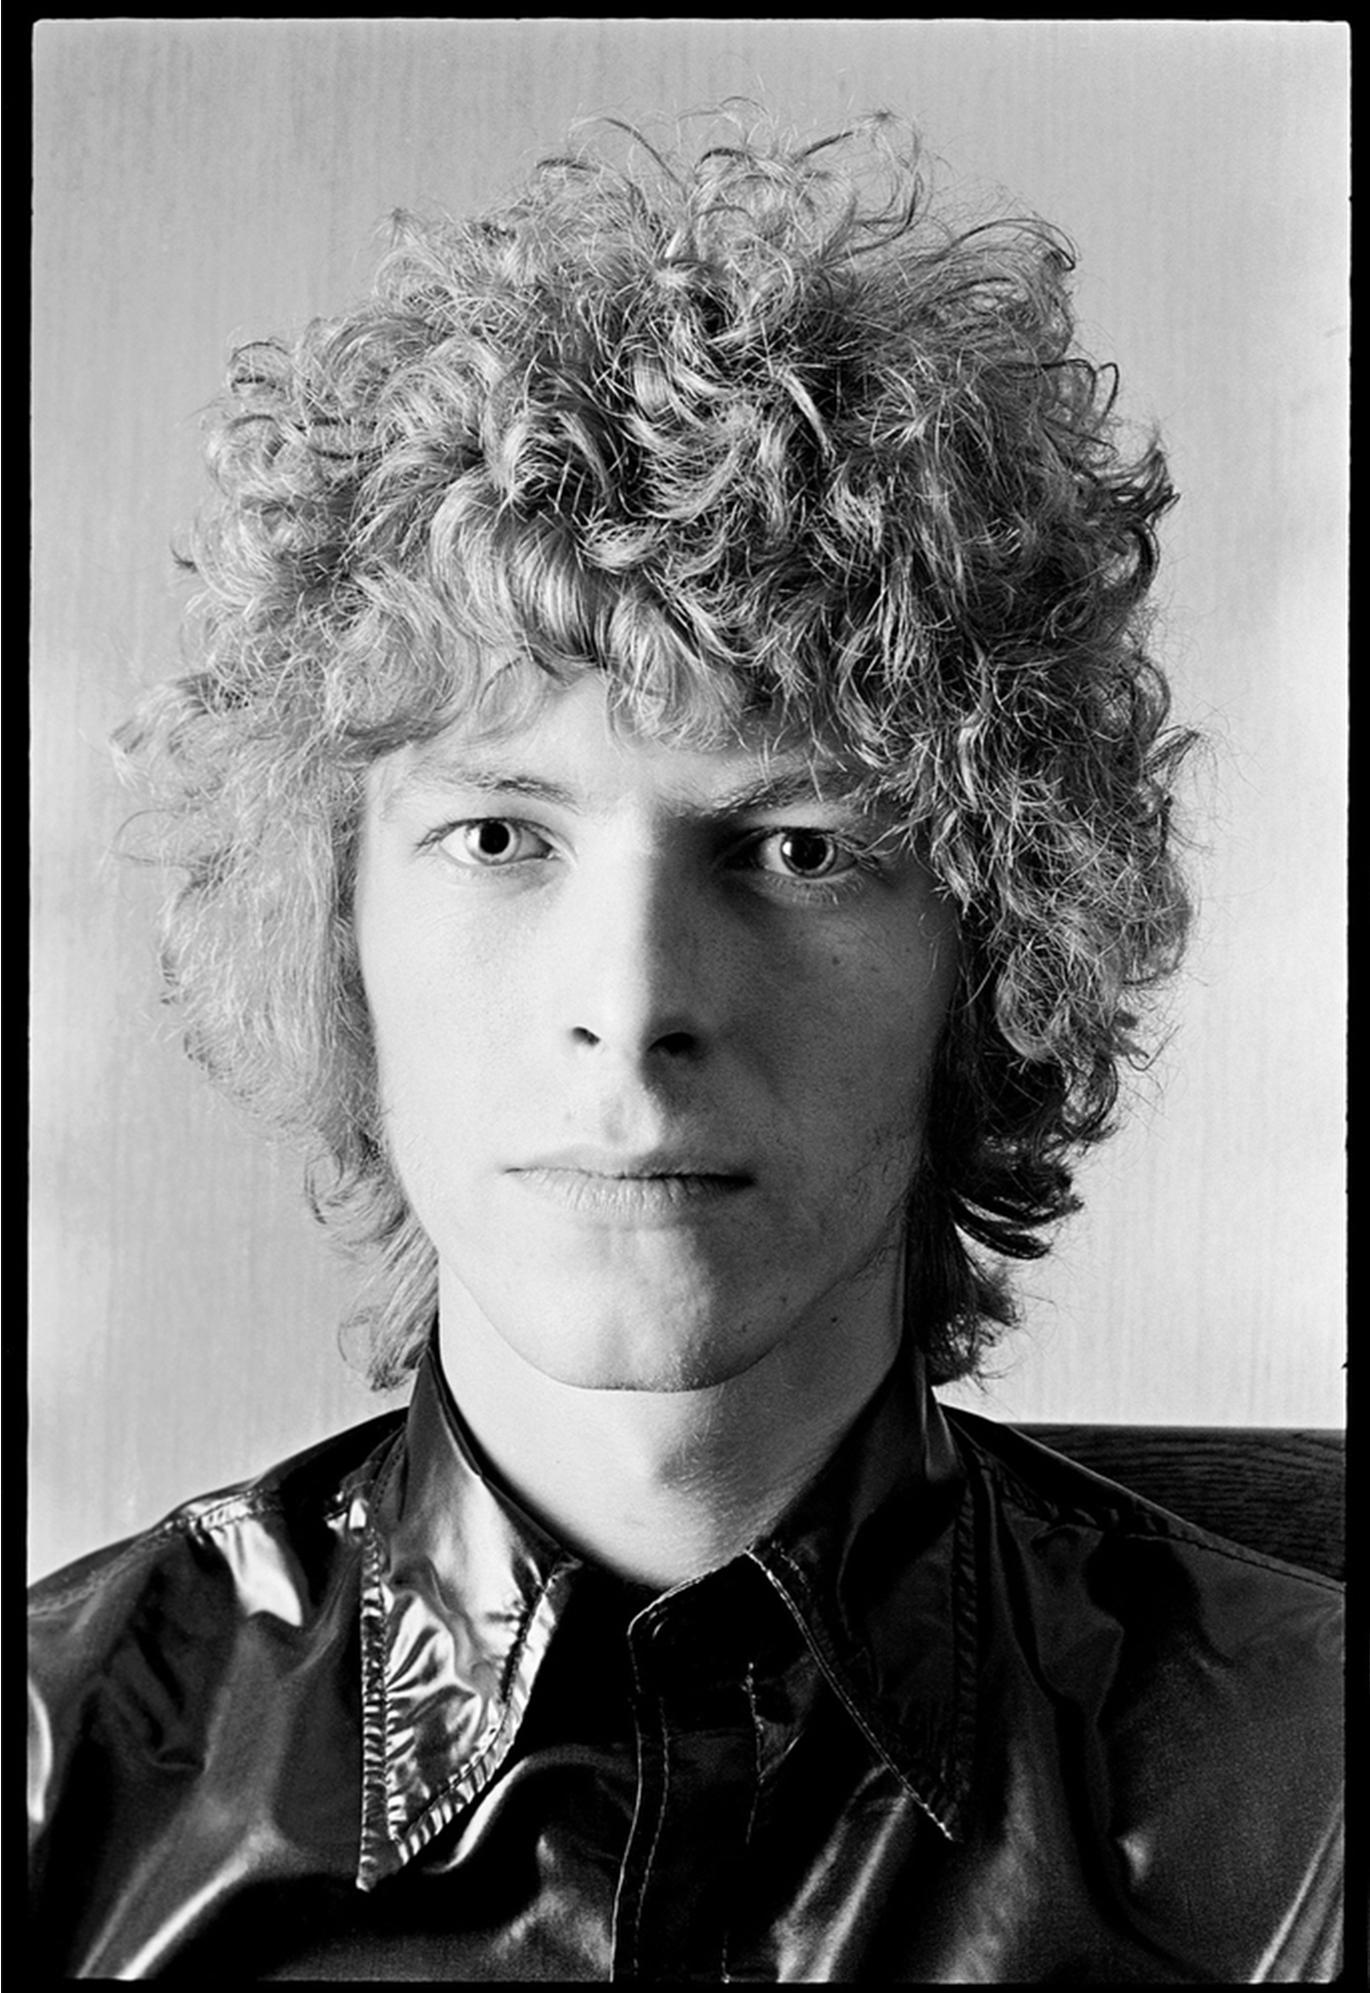 Alec Byrne Portrait Photograph - David Bowie 1969 portrait